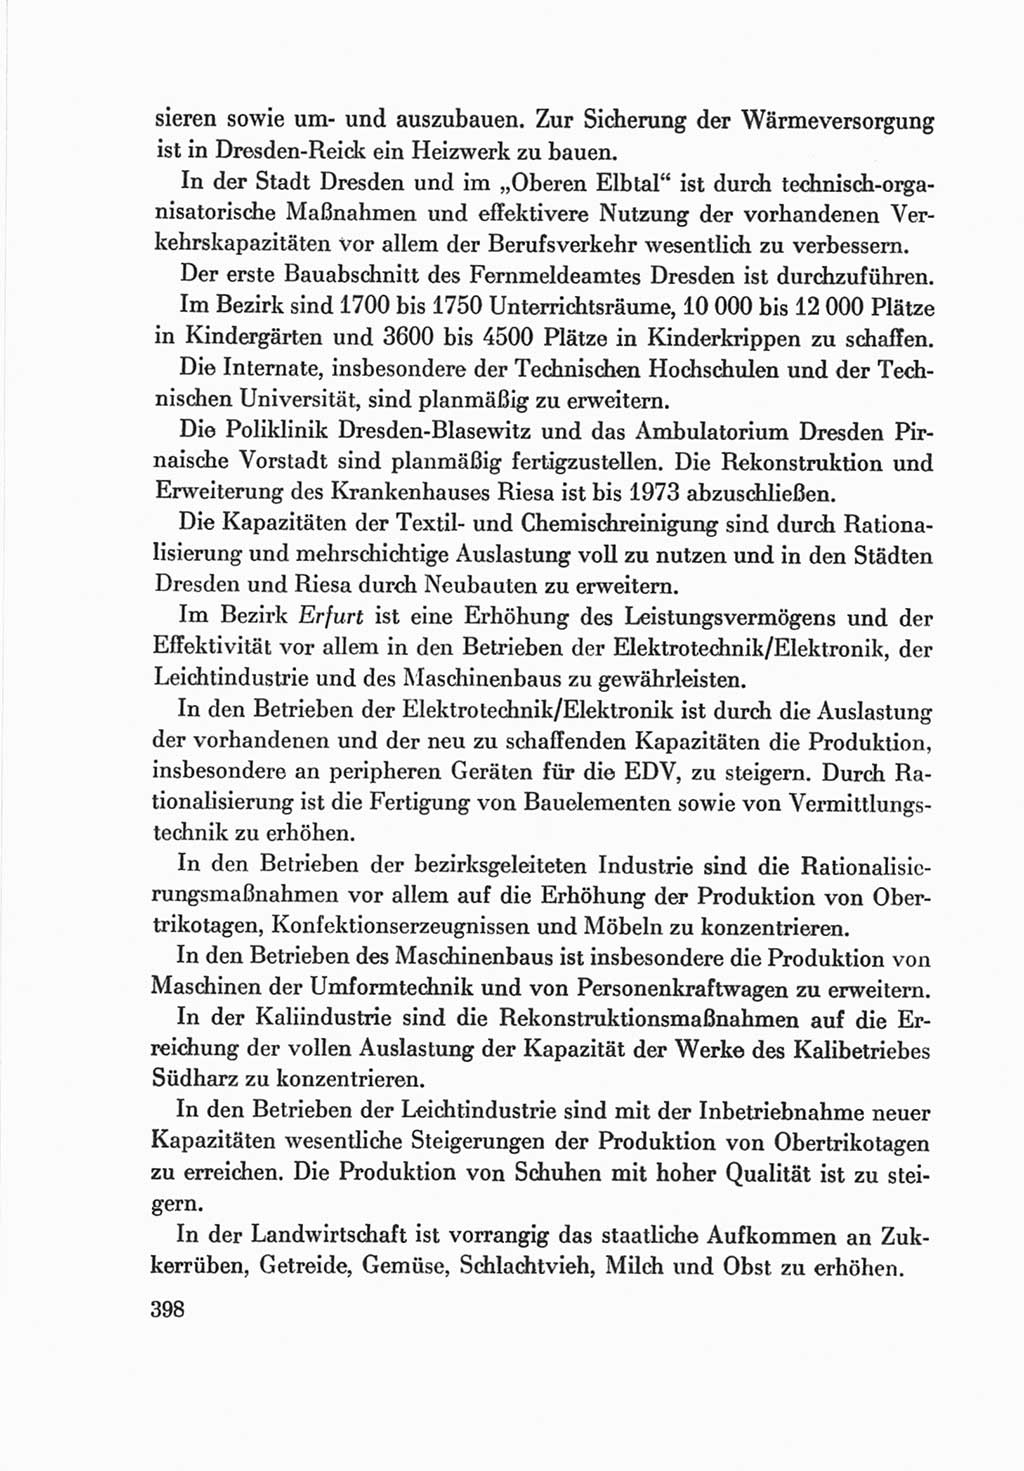 Protokoll der Verhandlungen des Ⅷ. Parteitages der Sozialistischen Einheitspartei Deutschlands (SED) [Deutsche Demokratische Republik (DDR)] 1971, Band 2, Seite 398 (Prot. Verh. Ⅷ. PT SED DDR 1971, Bd. 2, S. 398)